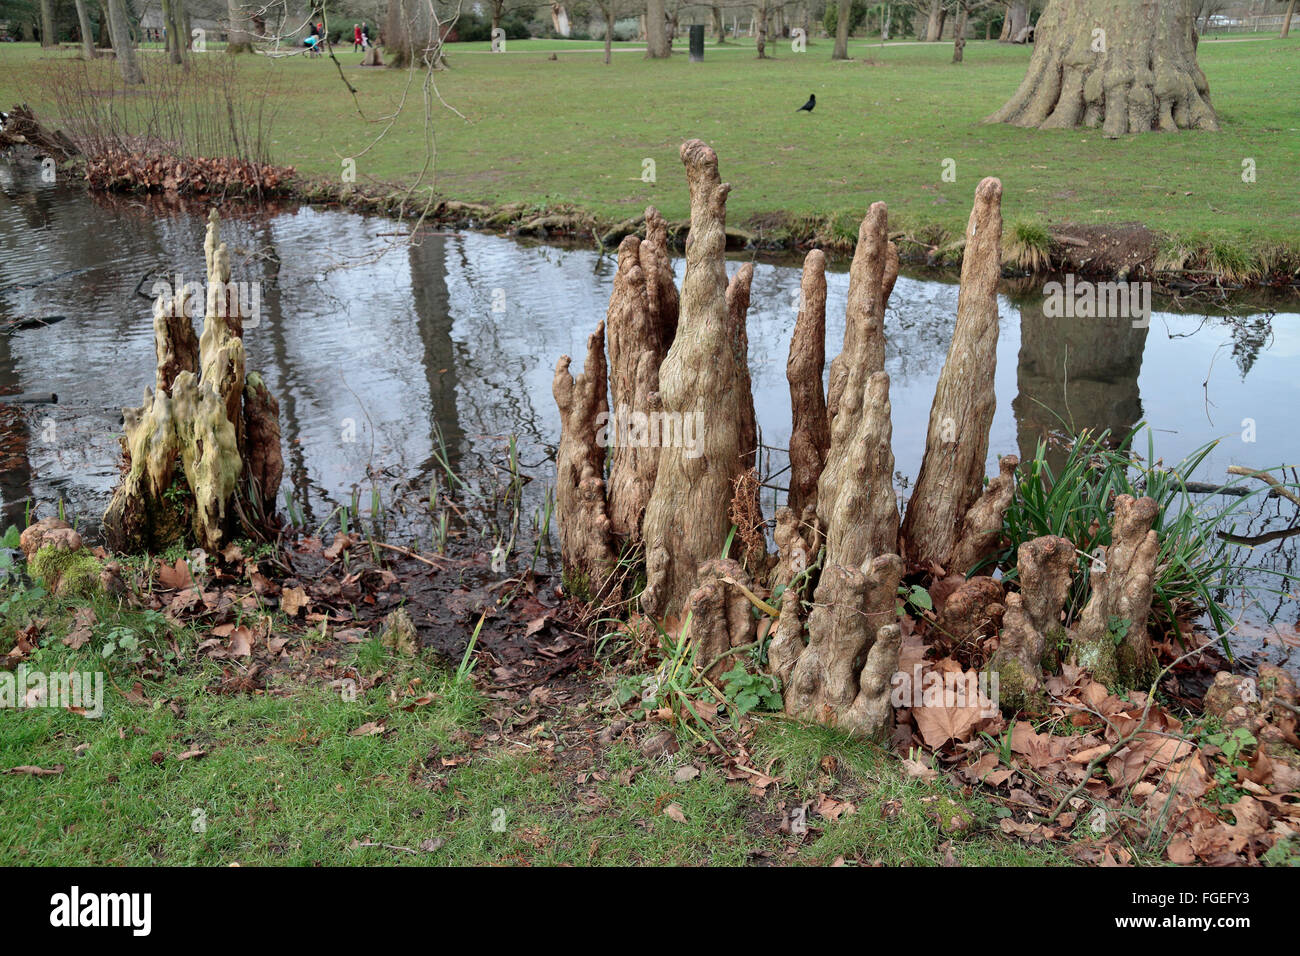 Ungewöhnliche schauende Sumpf Zypresse Baumwurzeln (Taxodium Distichum) in Woodland Gärten, Bushy Park, London, Großbritannien. Stockfoto